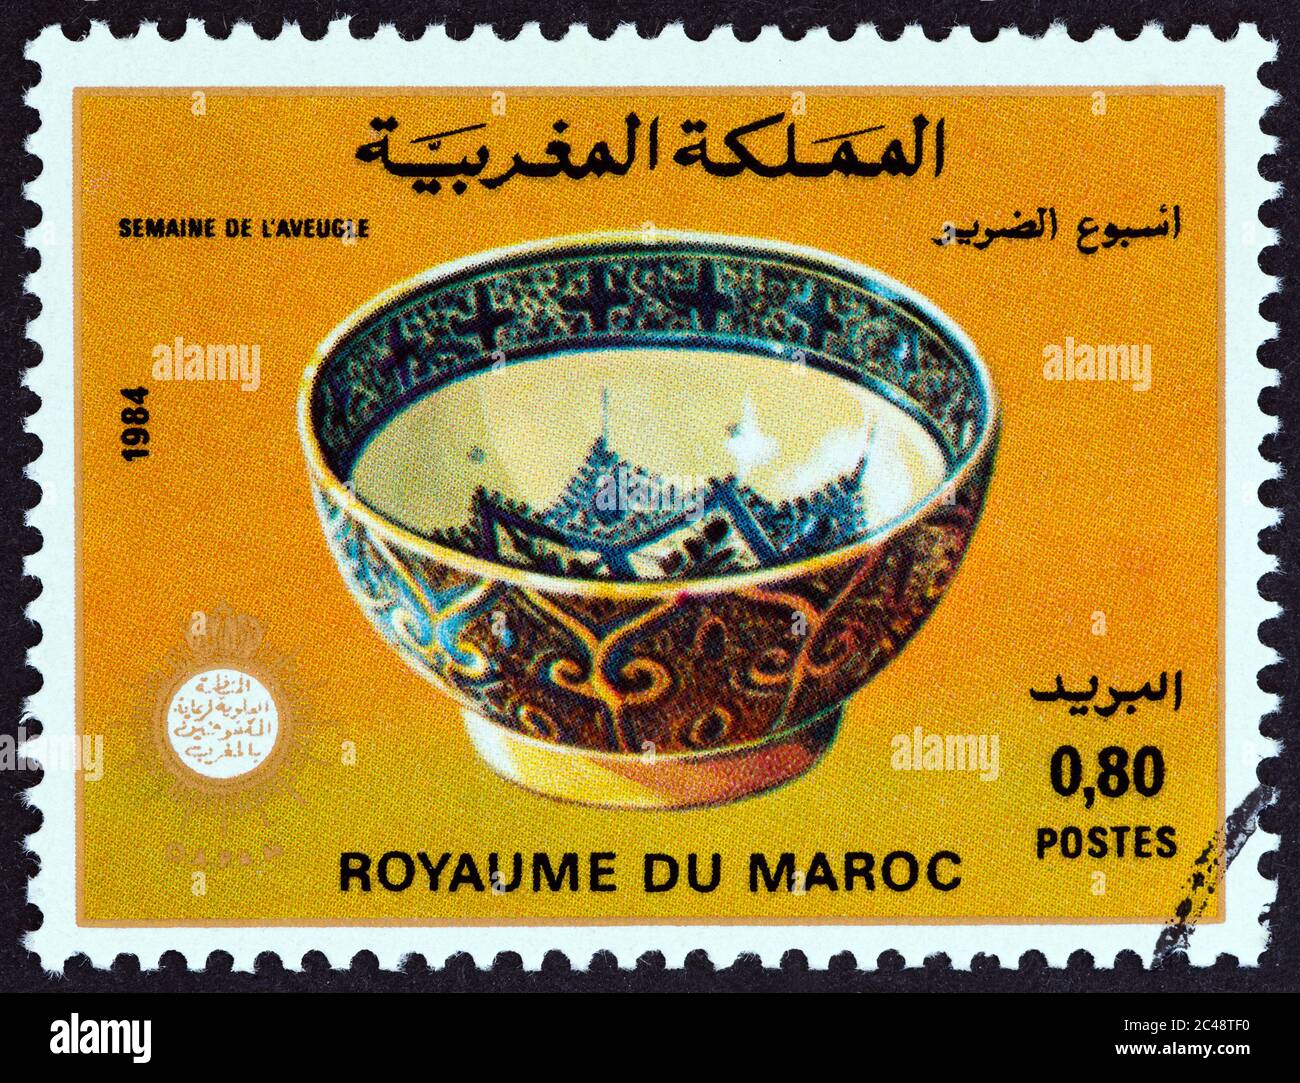 MAROKKO - UM 1984: Eine in Marokko gedruckte Marke aus der Ausgabe 'Week of the Blind' zeigt eine bemalte Schale, um 1984. Stockfoto